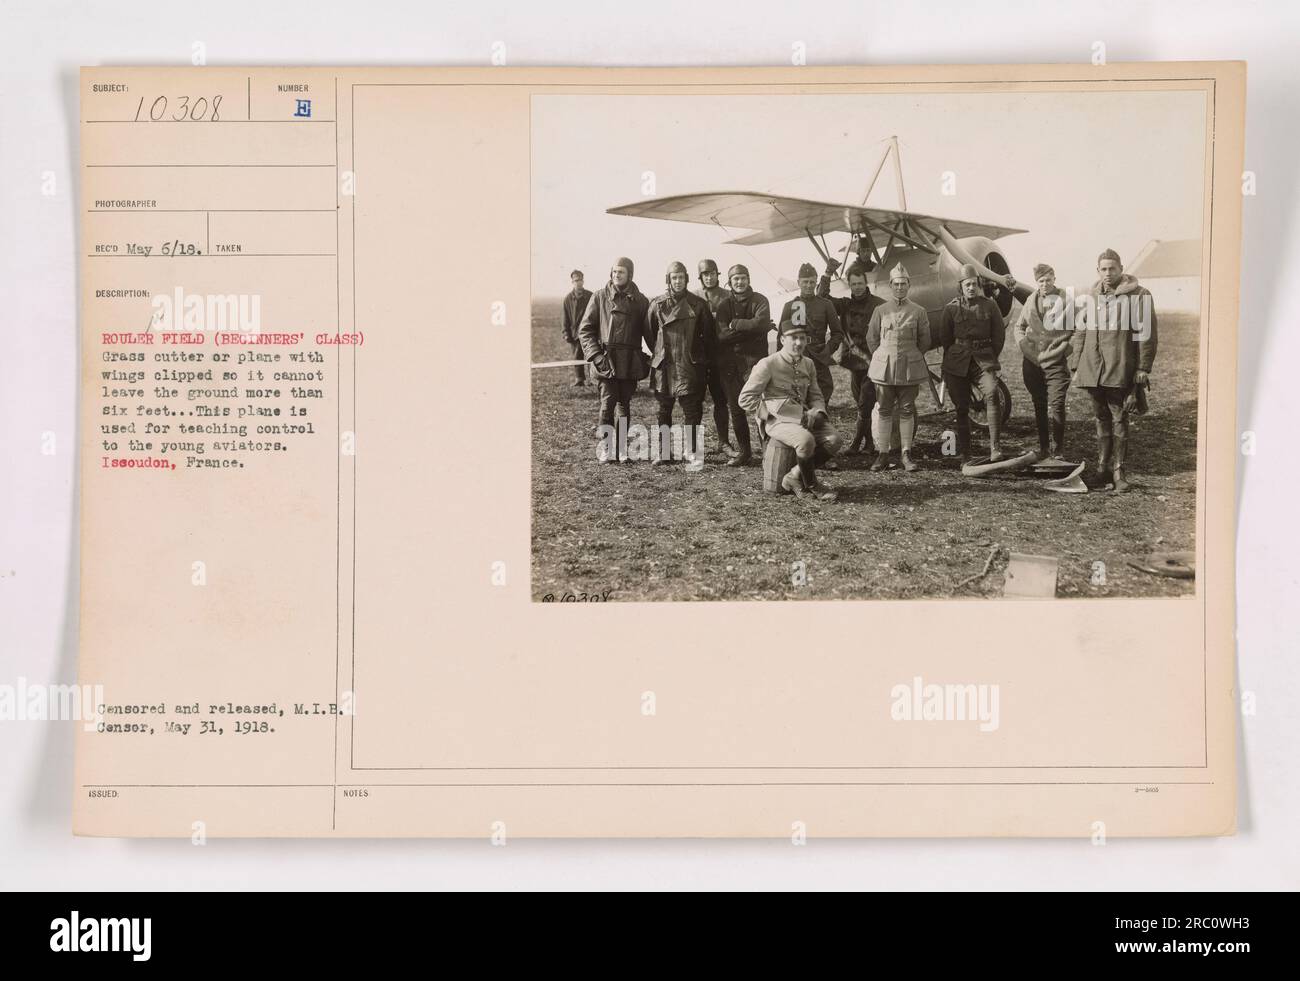 Dieses Foto wurde am 6. Mai 1918 im Rouleur Field (Anfängerkurs) in Issoudun, Frankreich, aufgenommen und zeigt einen Grasschneider oder ein Flugzeug mit Flügeln, die die Flughöhe auf sechs Meter begrenzen. Dieses modifizierte Flugzeug wird verwendet, um jungen Piloten Kontrolle beizubringen. Das Bild wurde zensiert und vom M.I.E. veröffentlicht Zensor am 31. Mai 1918. Stockfoto